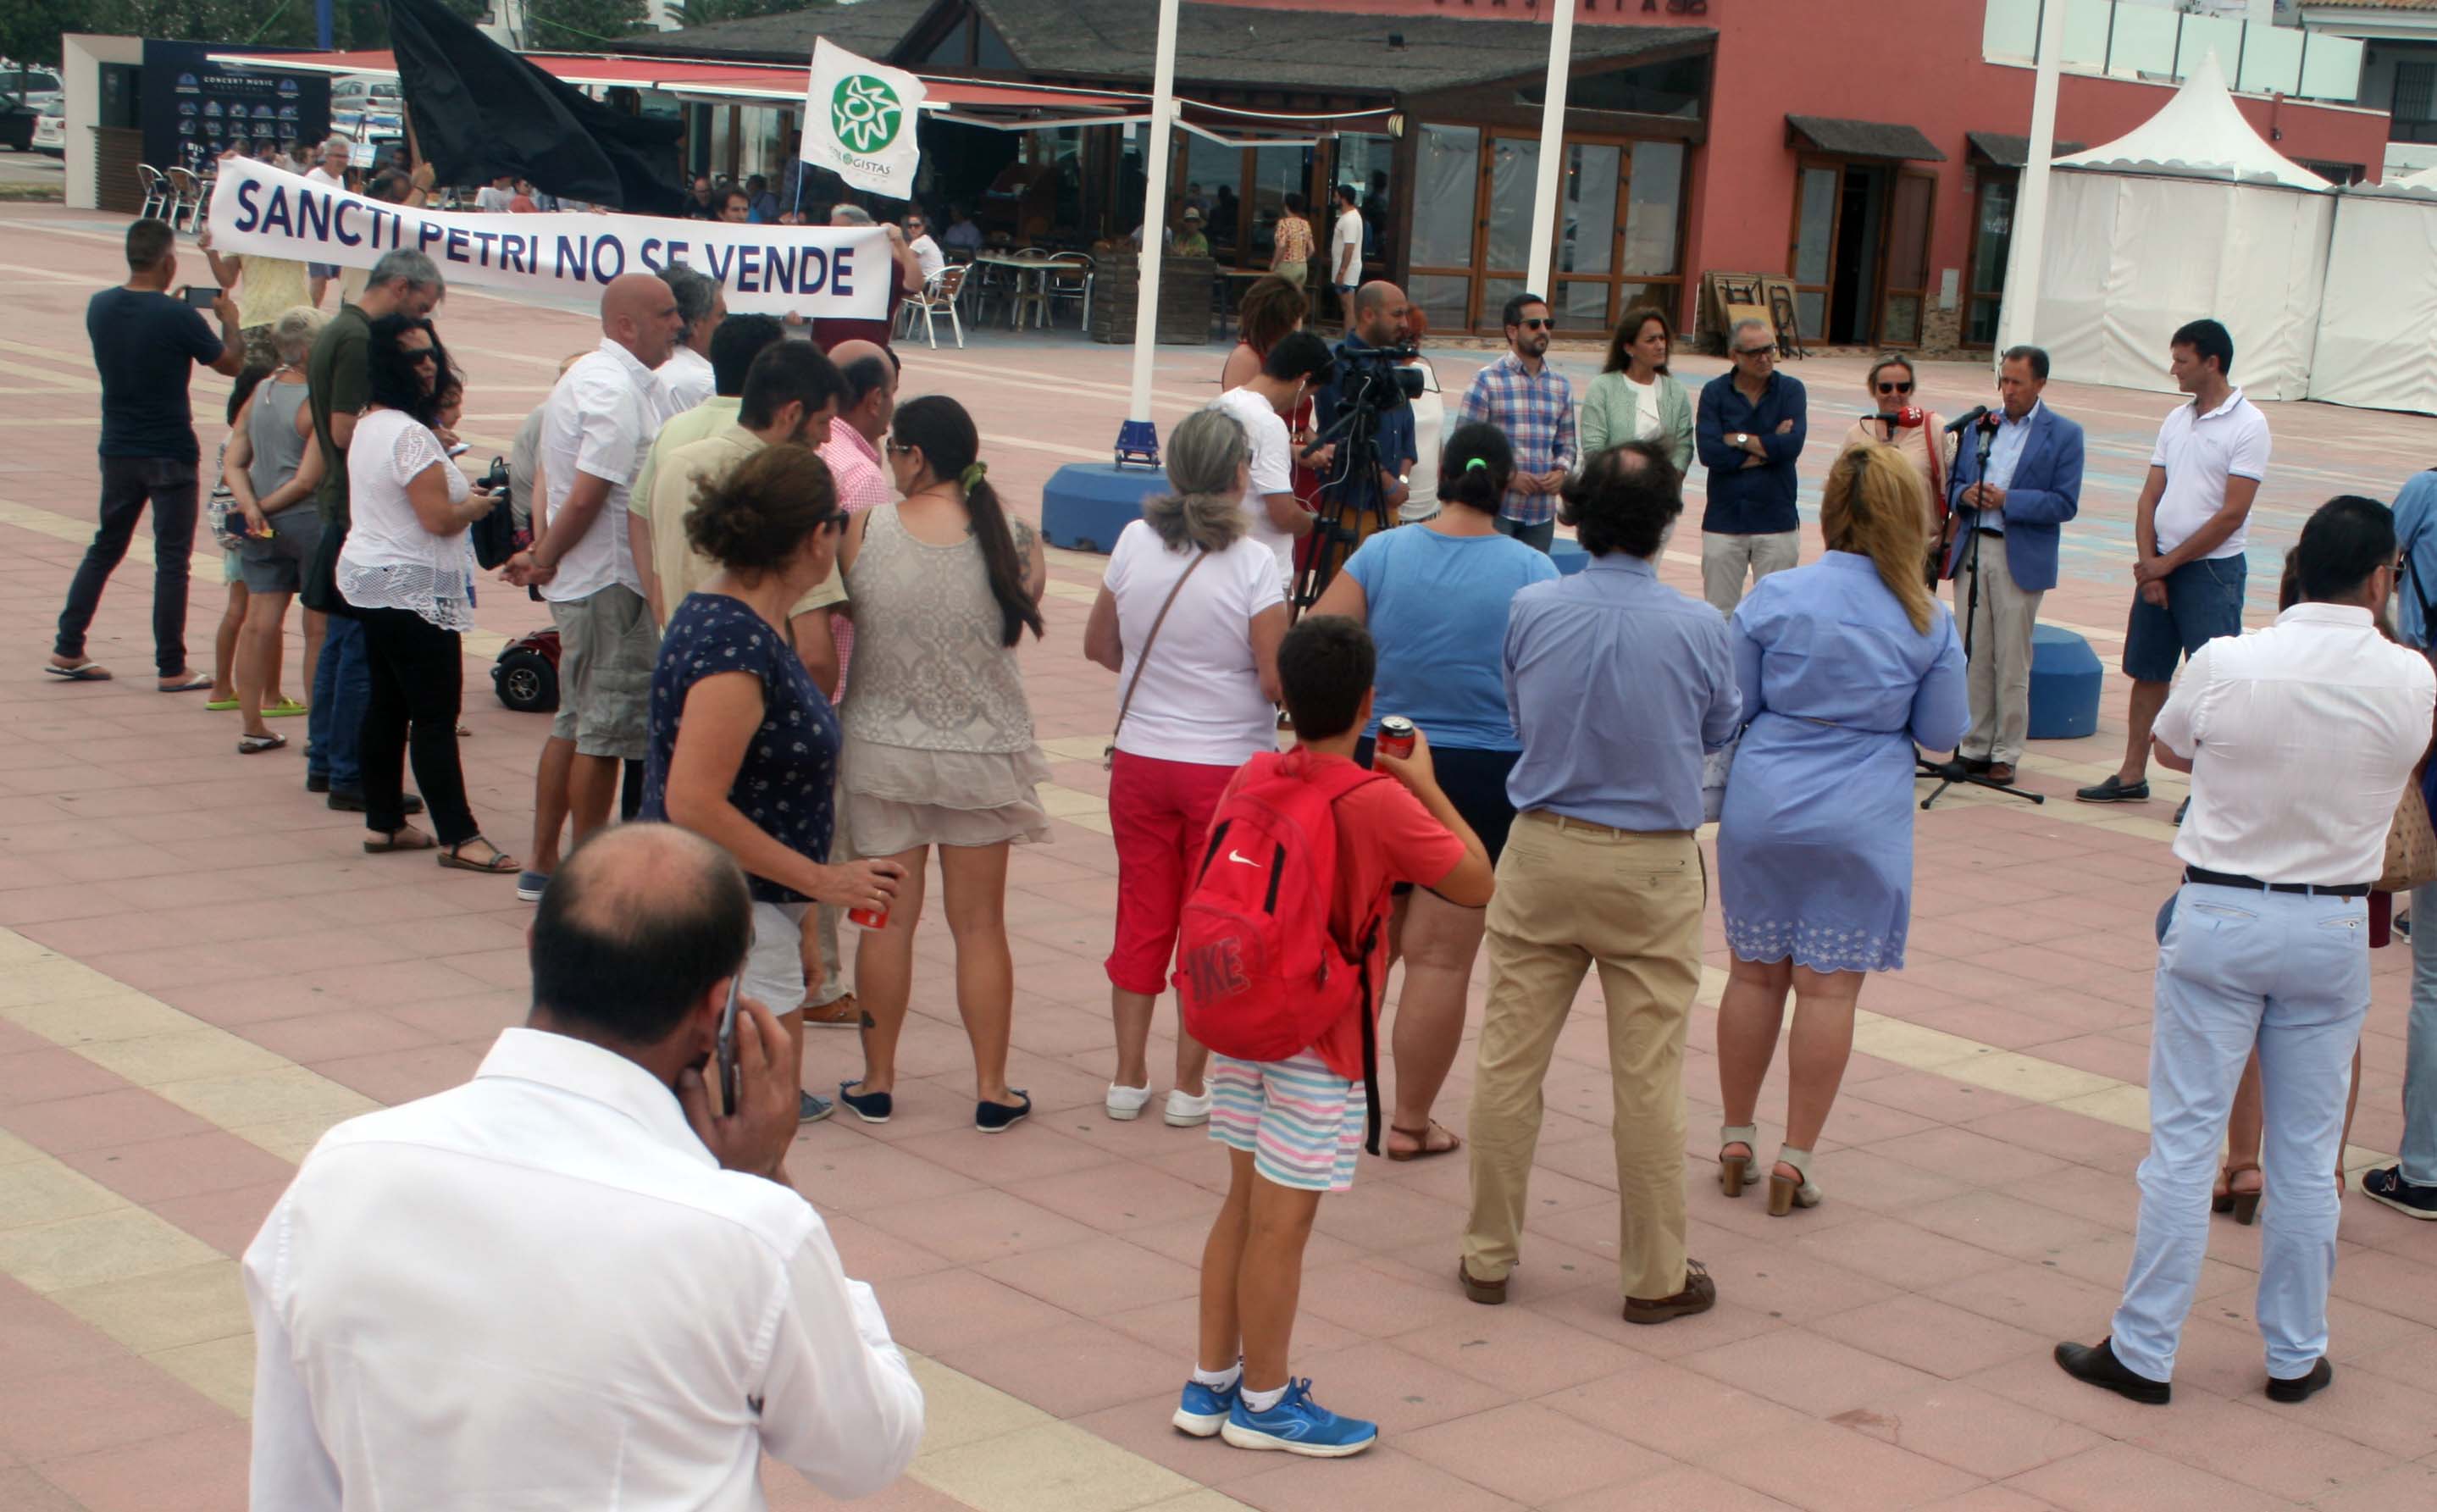 Protesta en Chiclana contra la especulación y el uso privado de Sancti Petri.